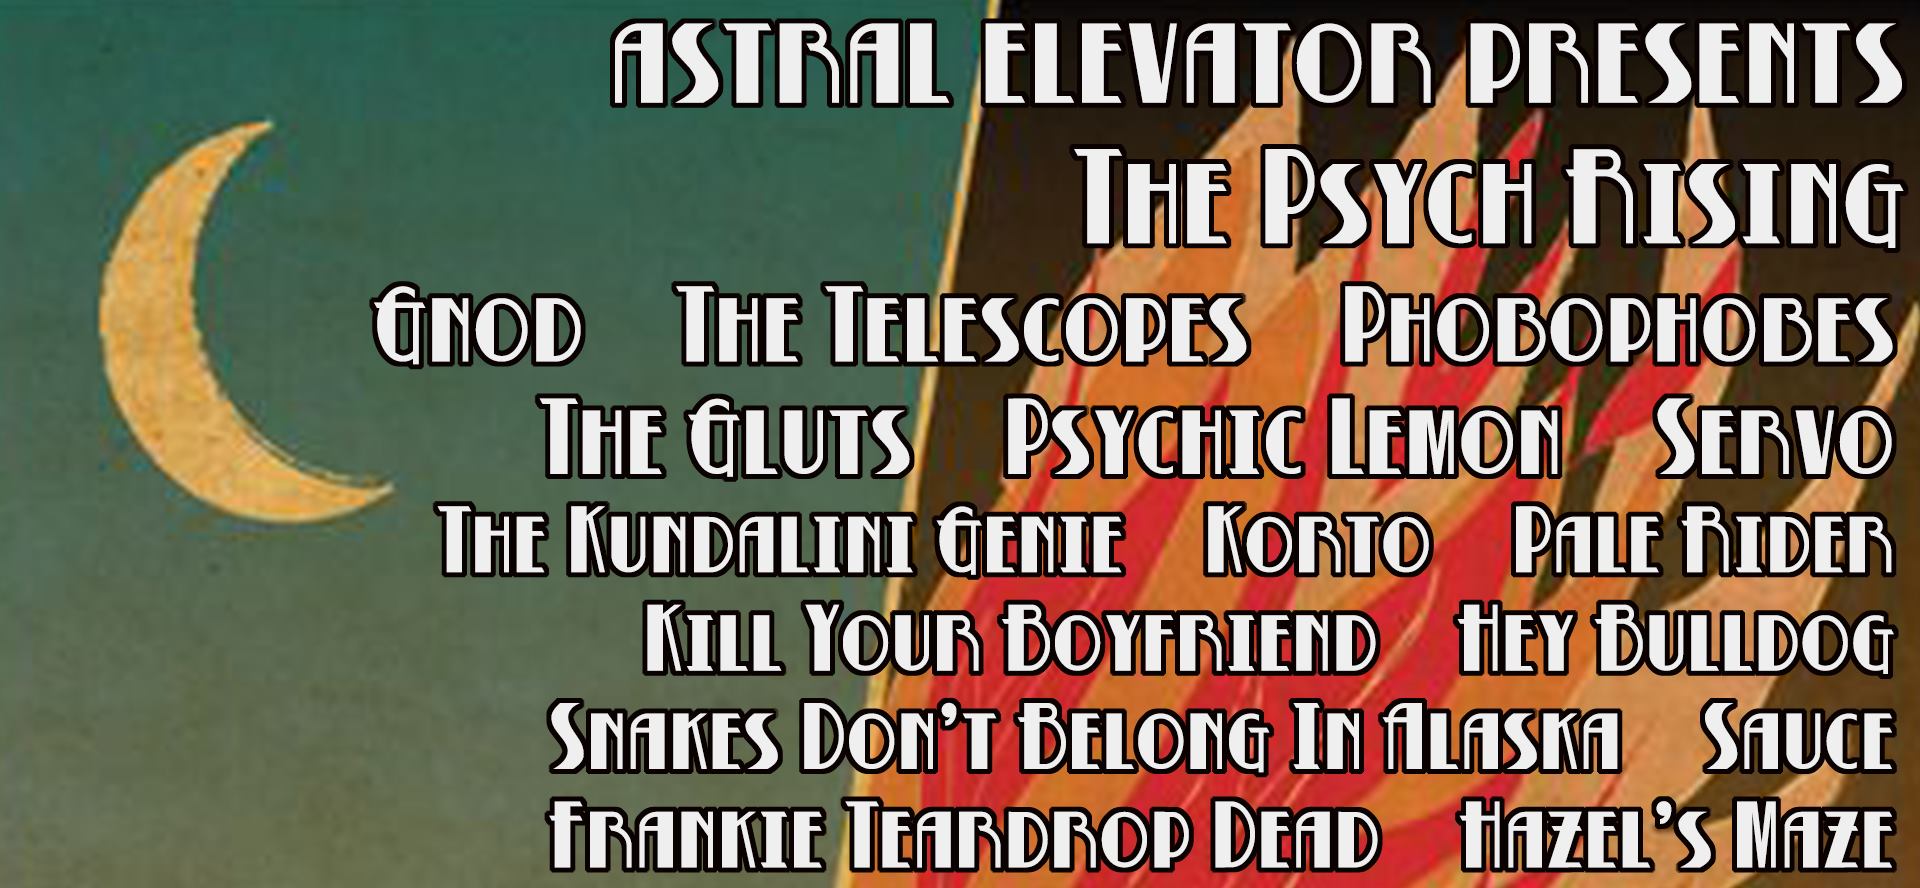 Astral Elevator